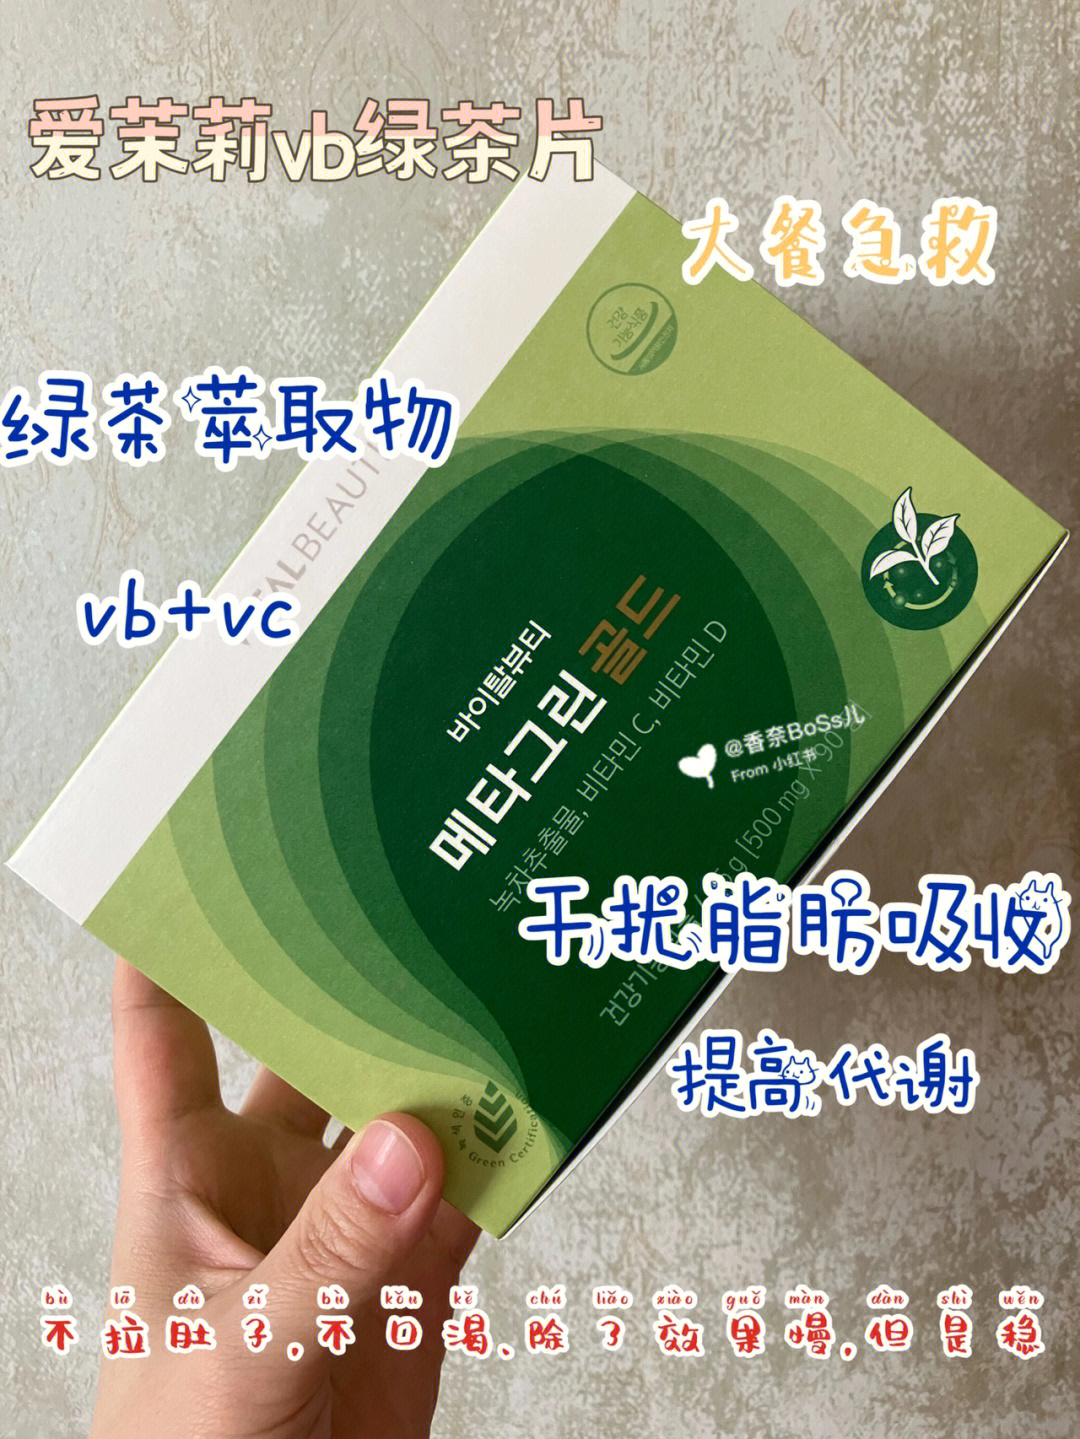 爱茉莉vb绿茶片韩国通赛推荐